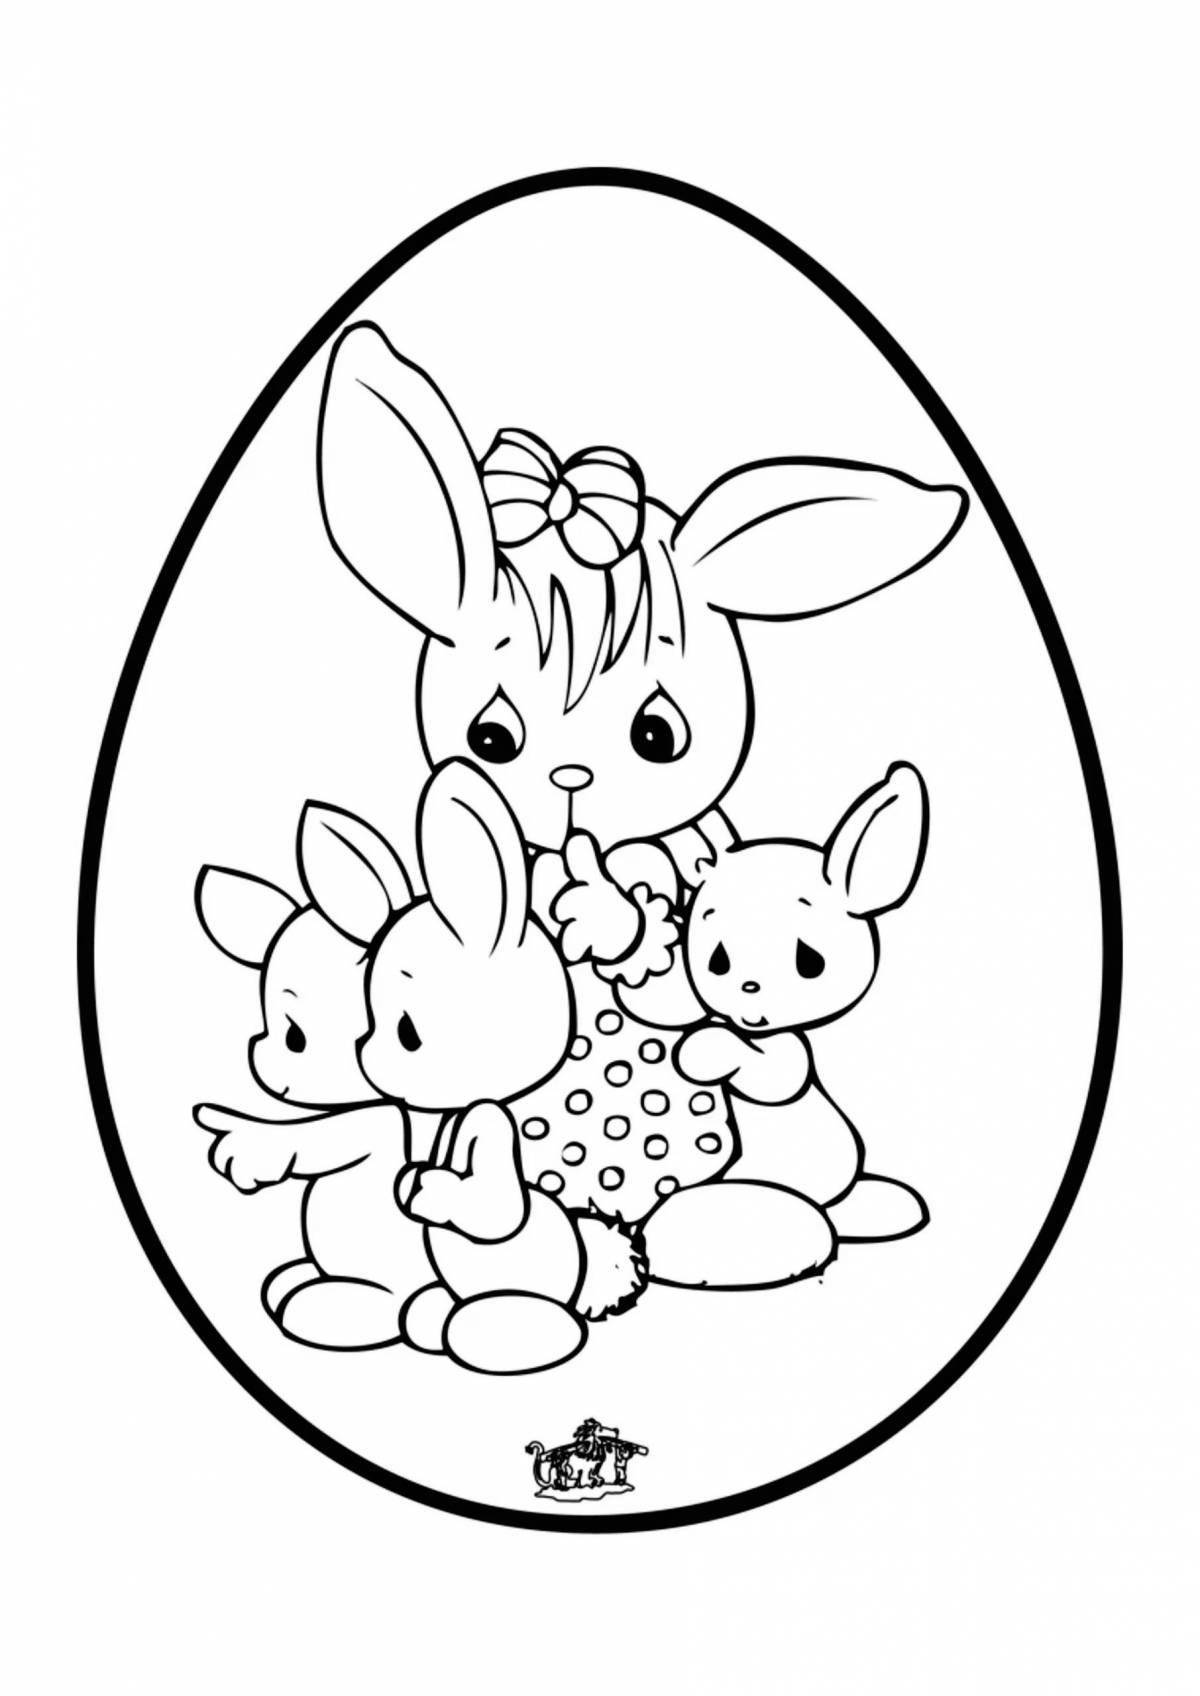 Яркая раскраска кролика для детей